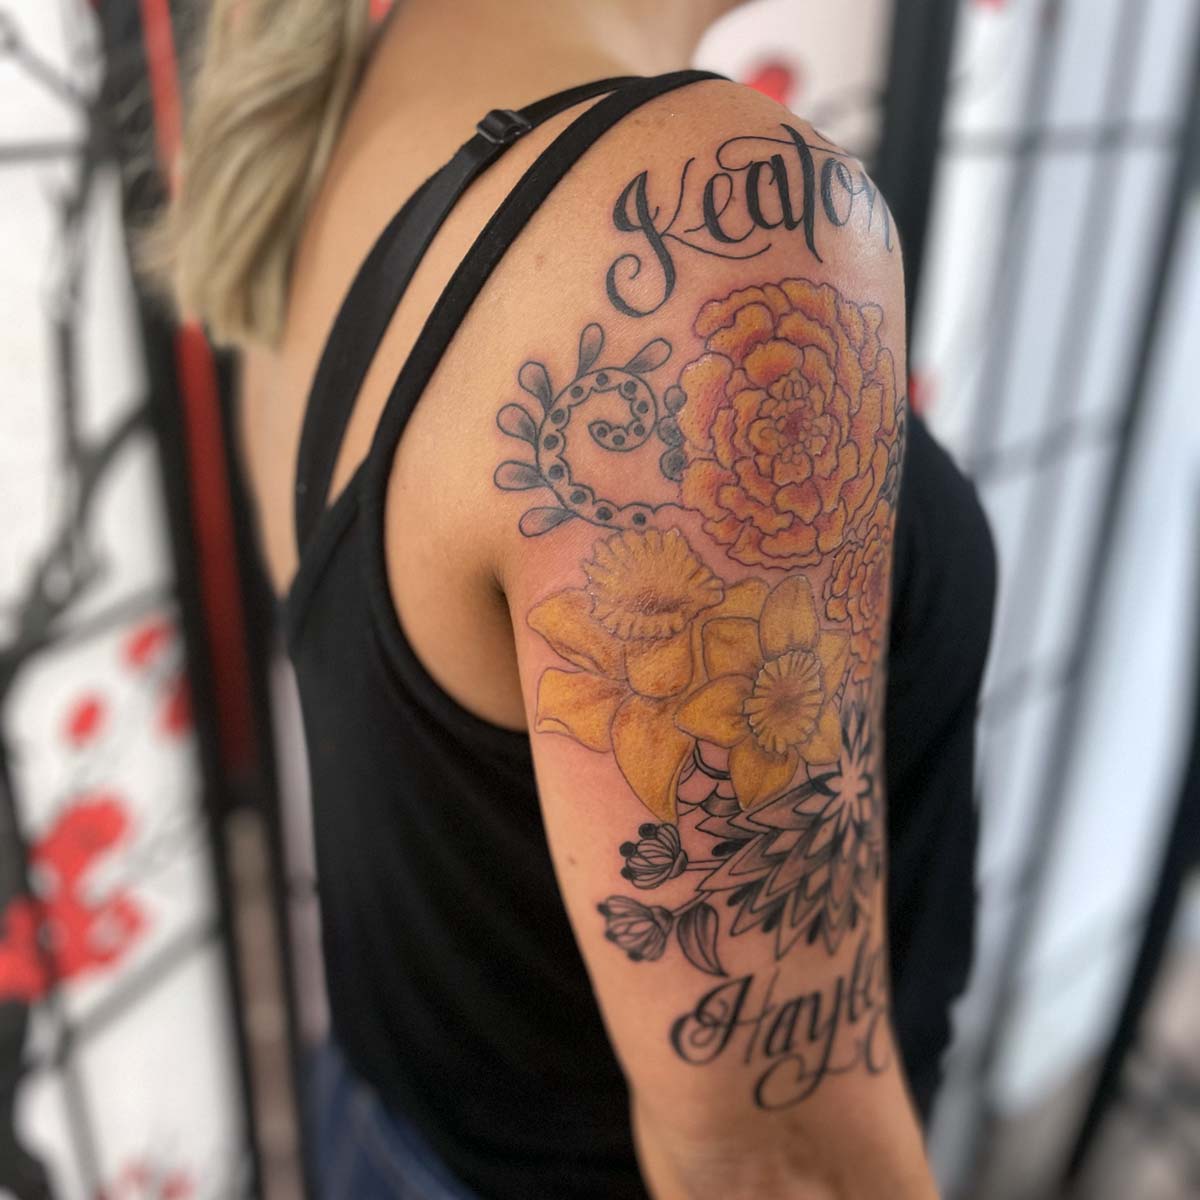 Floral Arm Tattoo